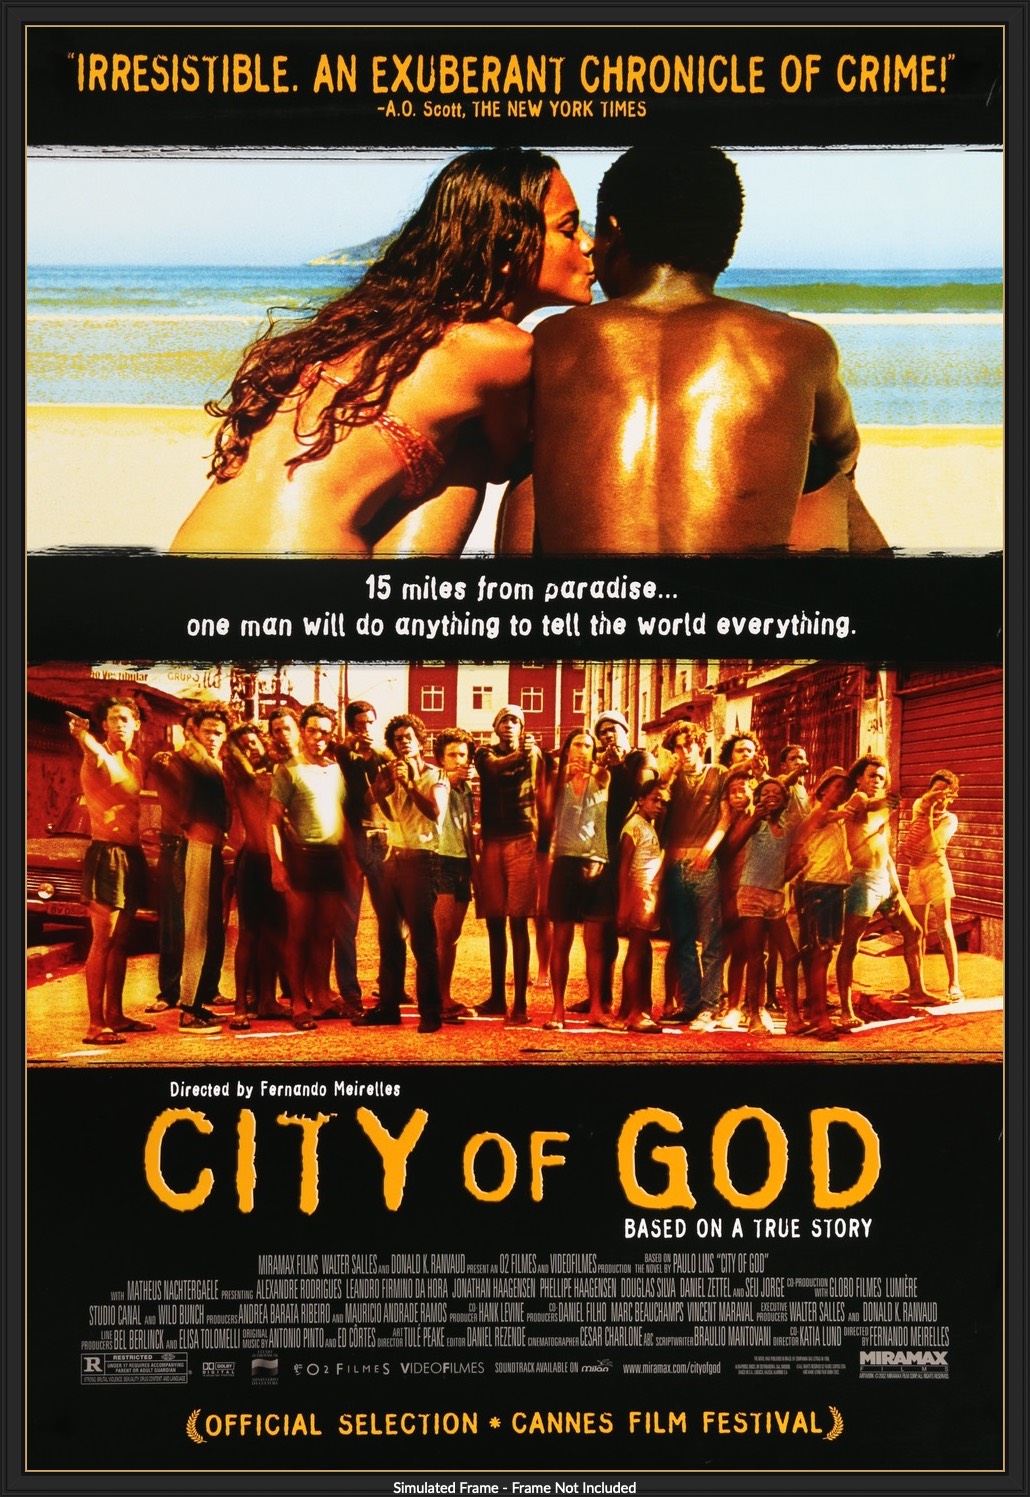 City of God (2002) original movie poster for sale at Original Film Art